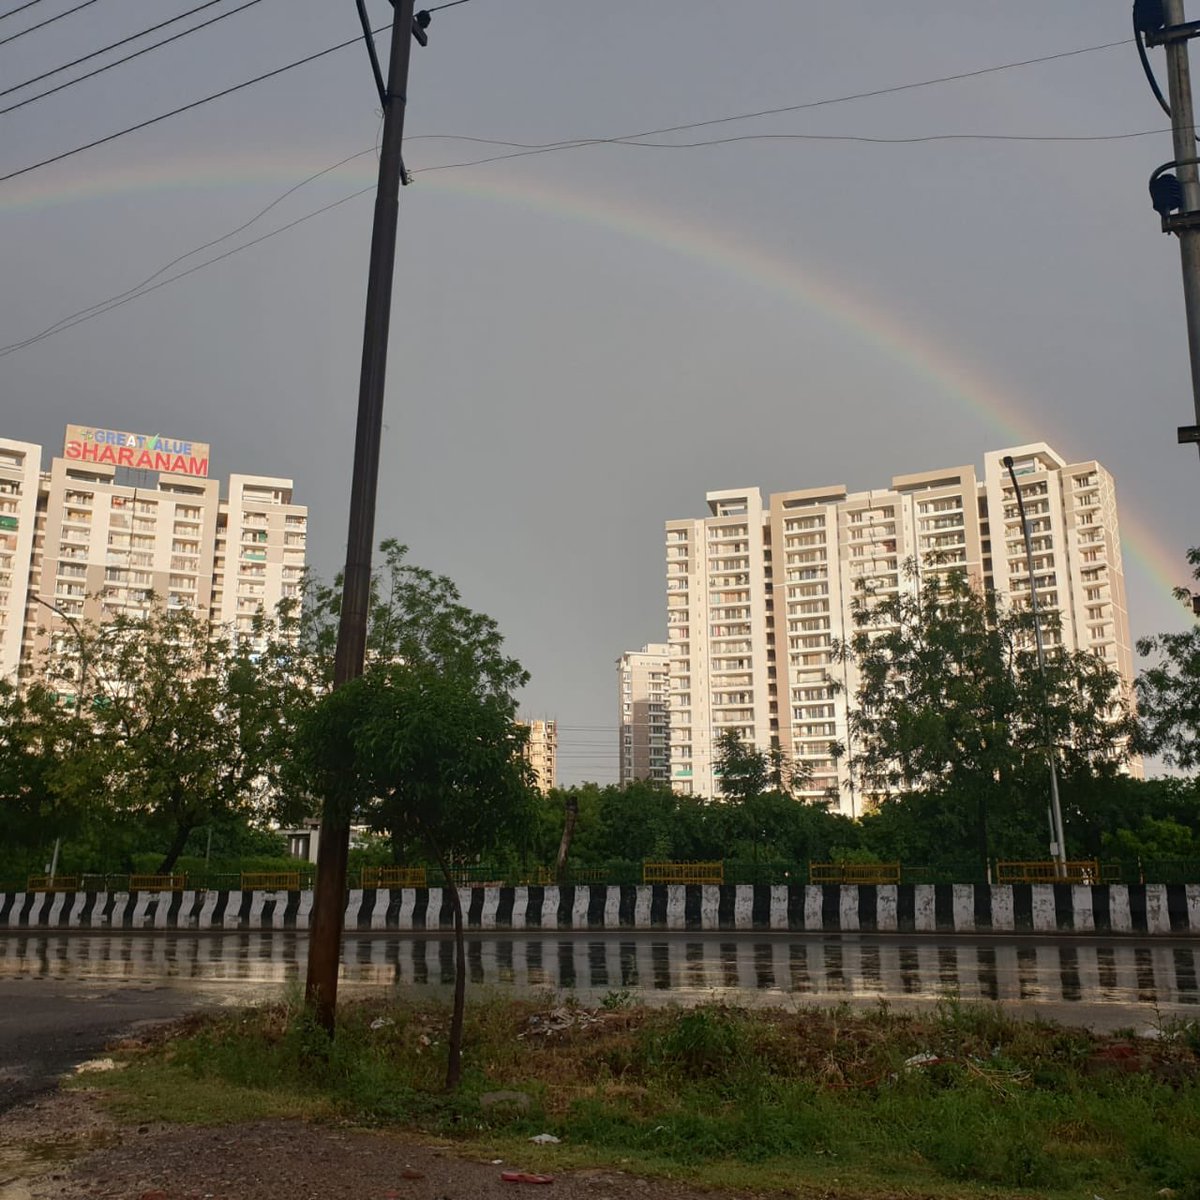 ये उम्मीद का इंद्रधनुष है .. 

ईश्वर का इशारा है..
आगे सब अच्छा है !!!

 #rainbow #rainbowsofhope